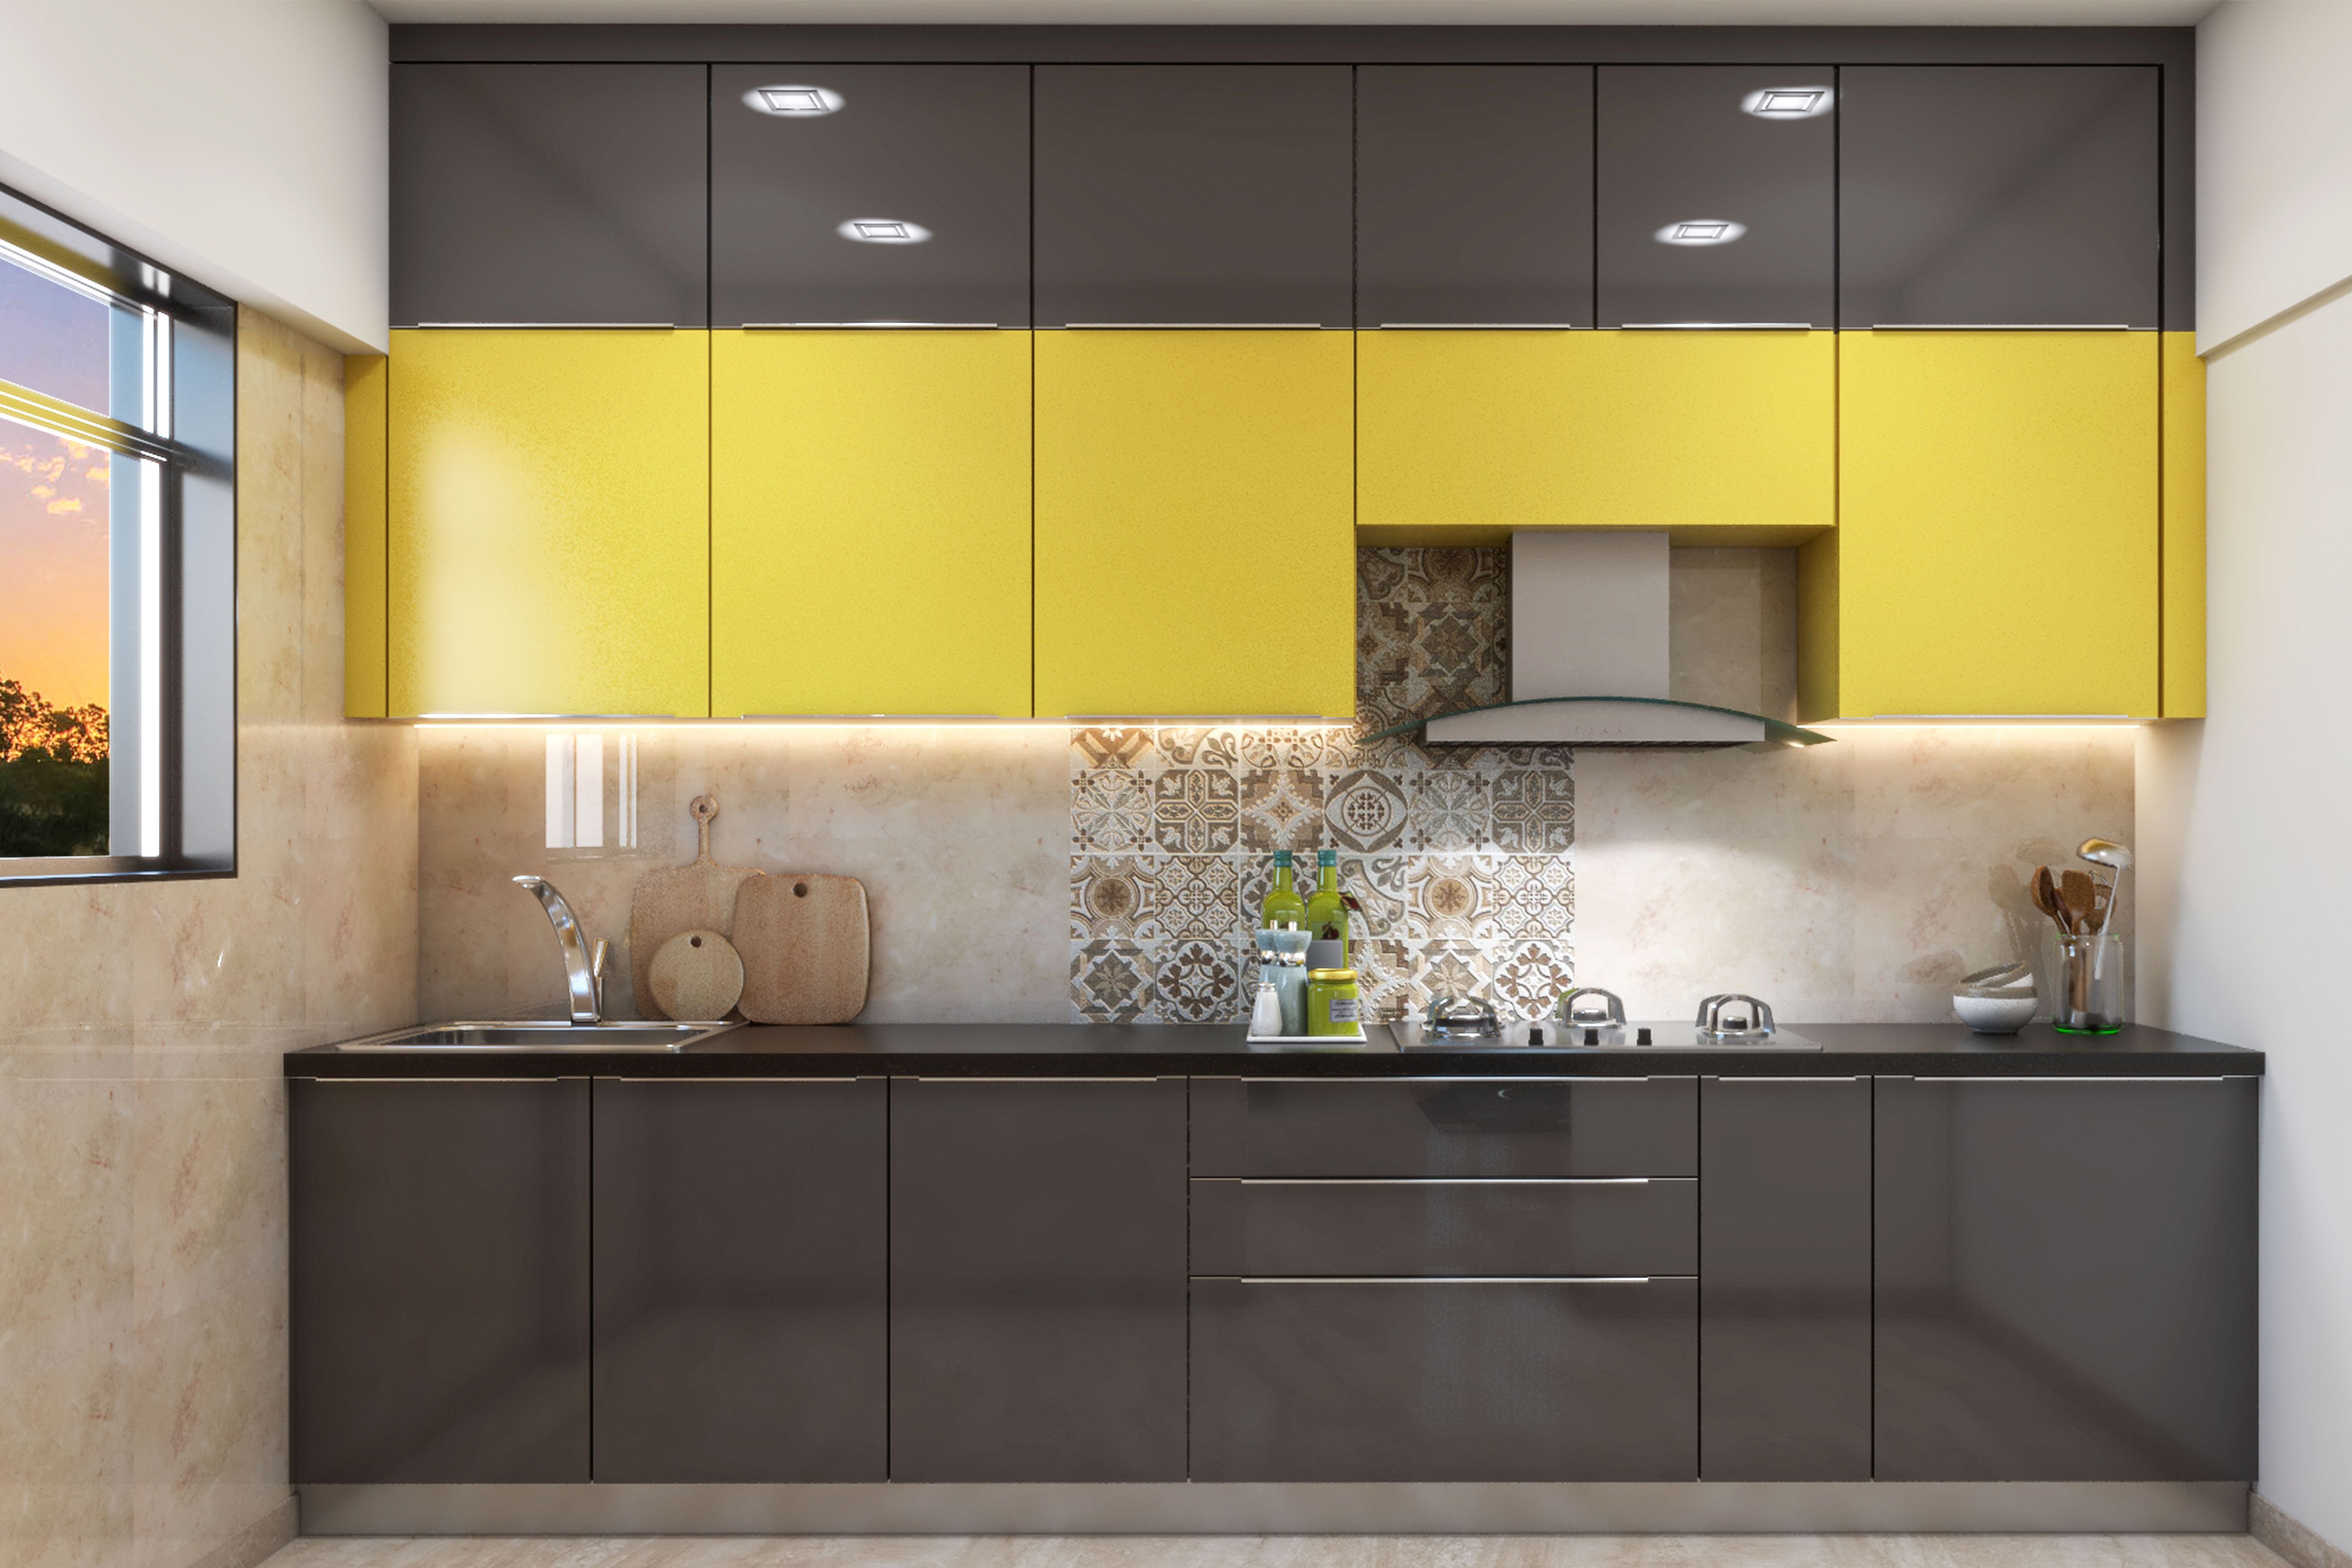 Spacious Yellow-Grey Modular Kitchen Design